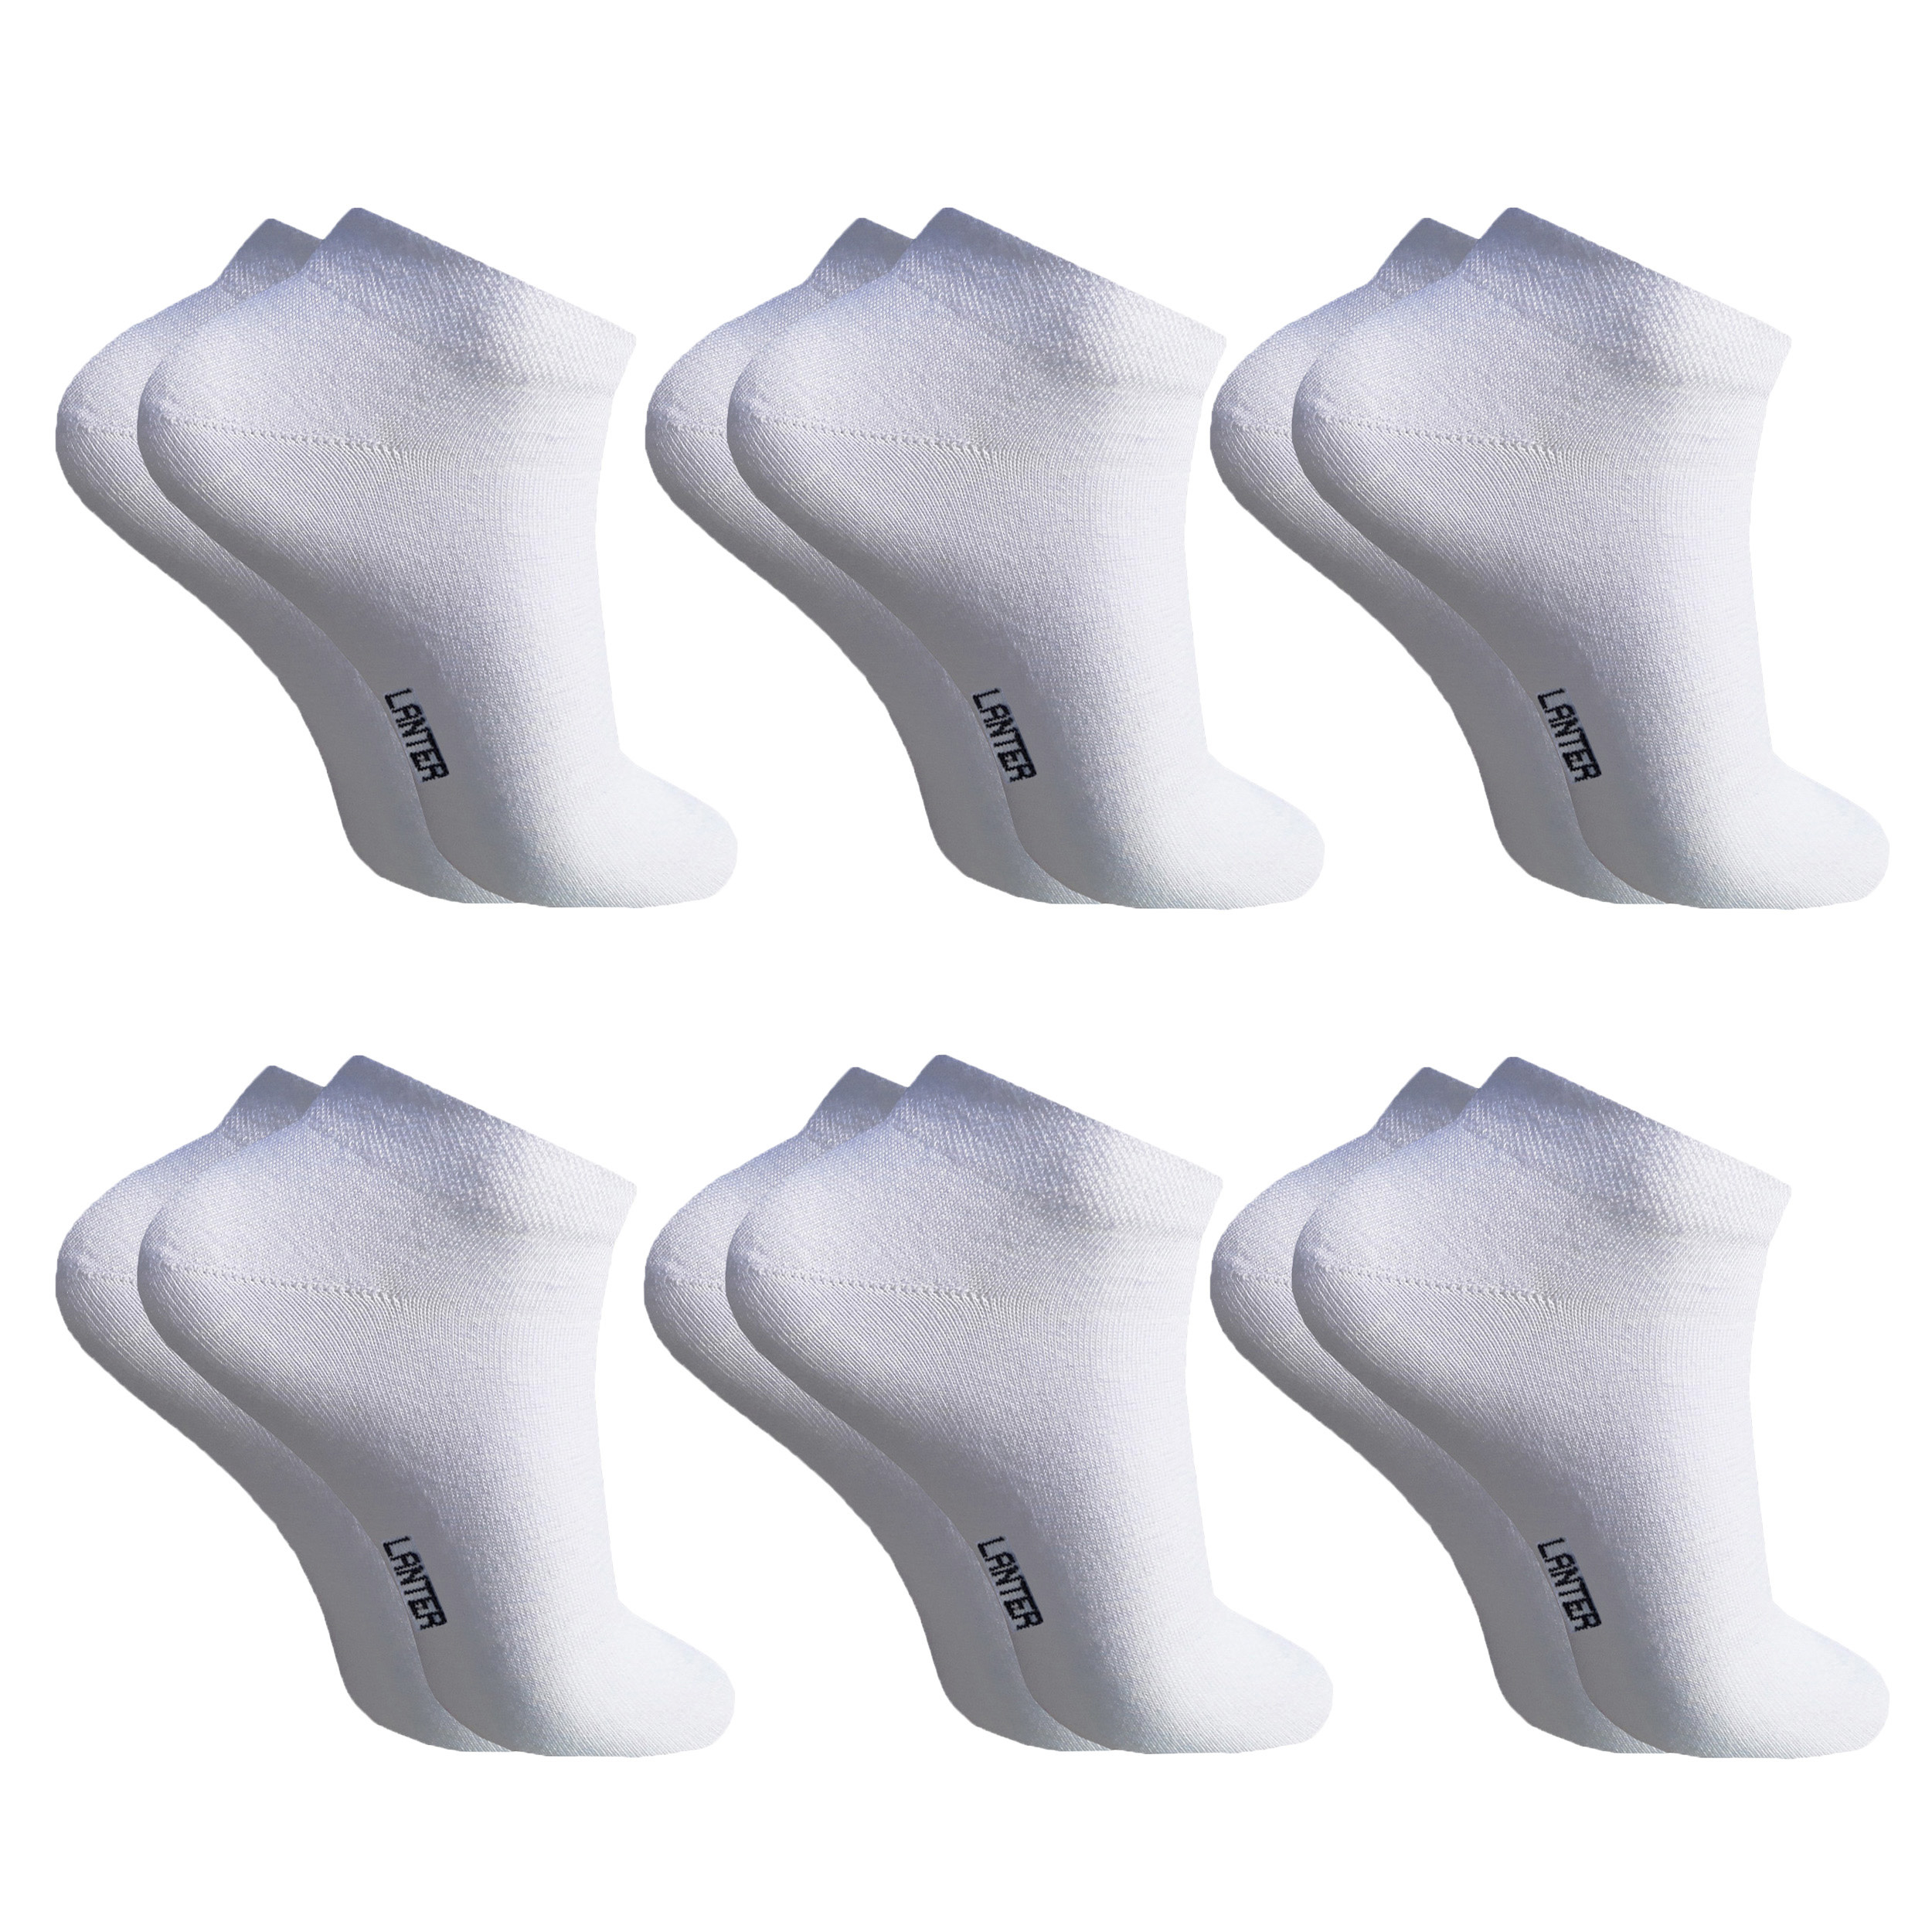 جوراب ساق کوتاه مردانه لنتر مدل مچی Cycas رنگ سفید مجموعه 6 عددی -  - 1